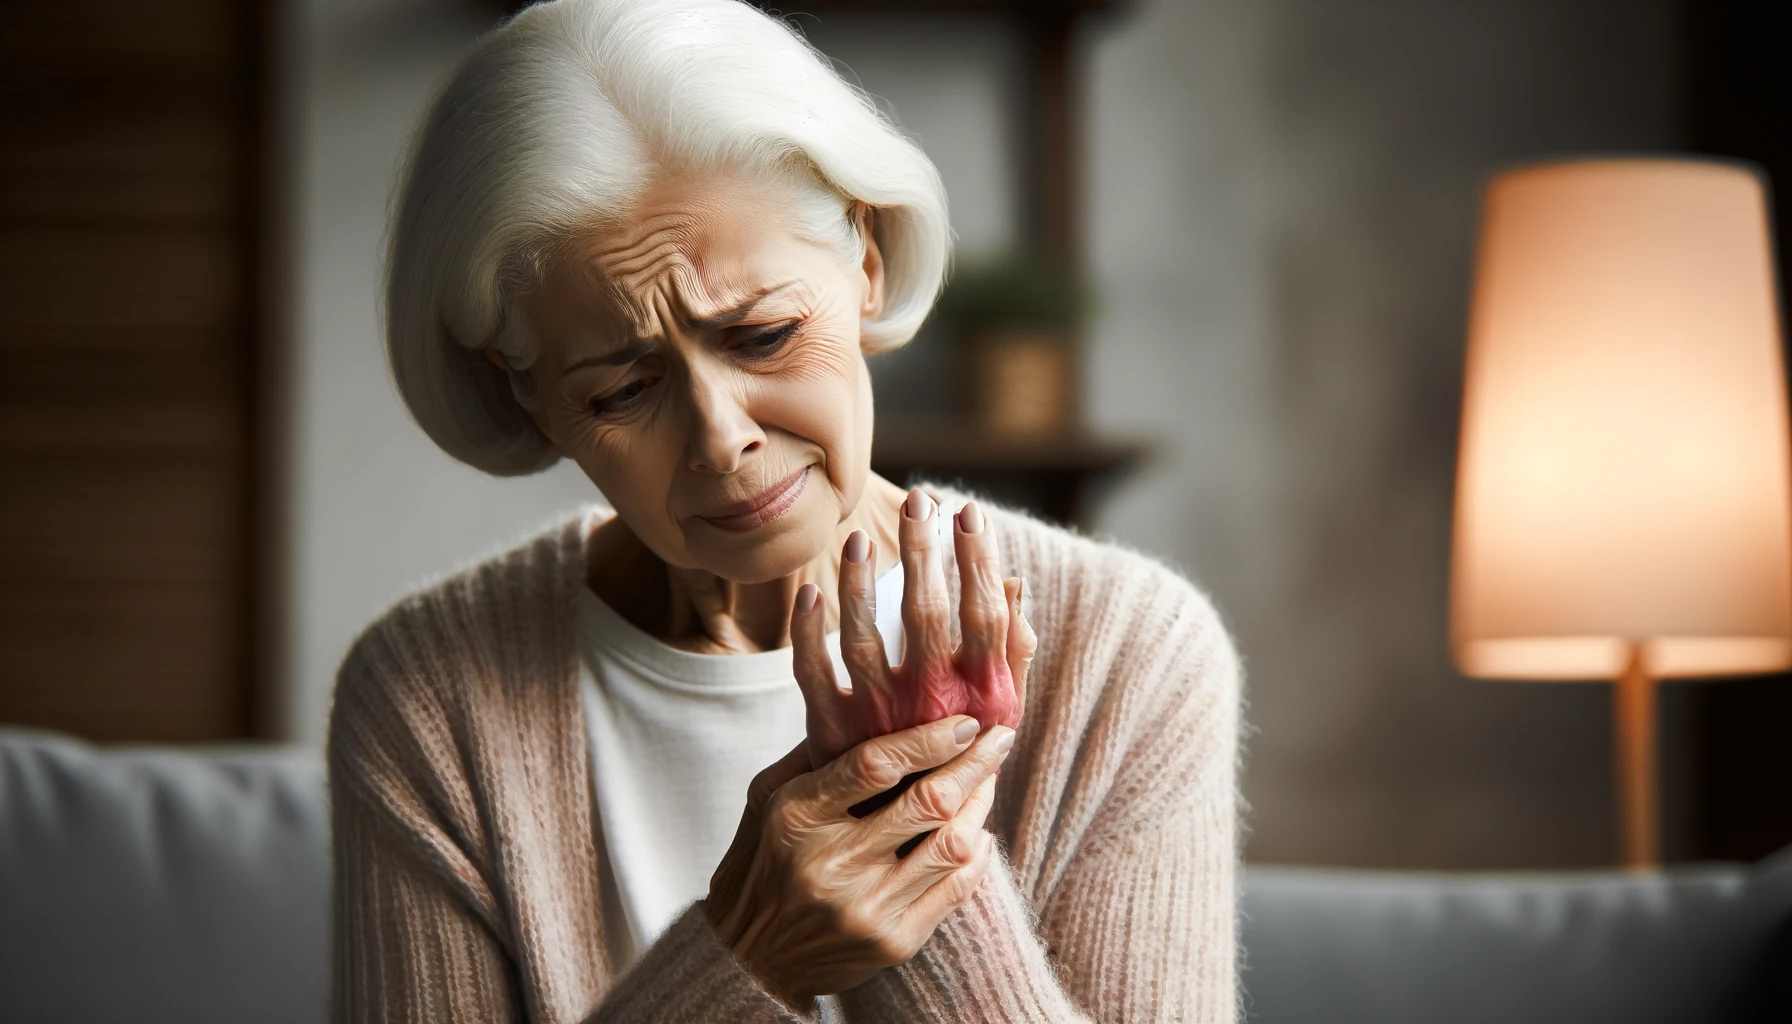 egy idős nő képe, aki fájdalmasan szorítja a kezét, megörökítve a kellemetlen pillanatot. A jelenetet úgy kell megkomponálni, hogy az e